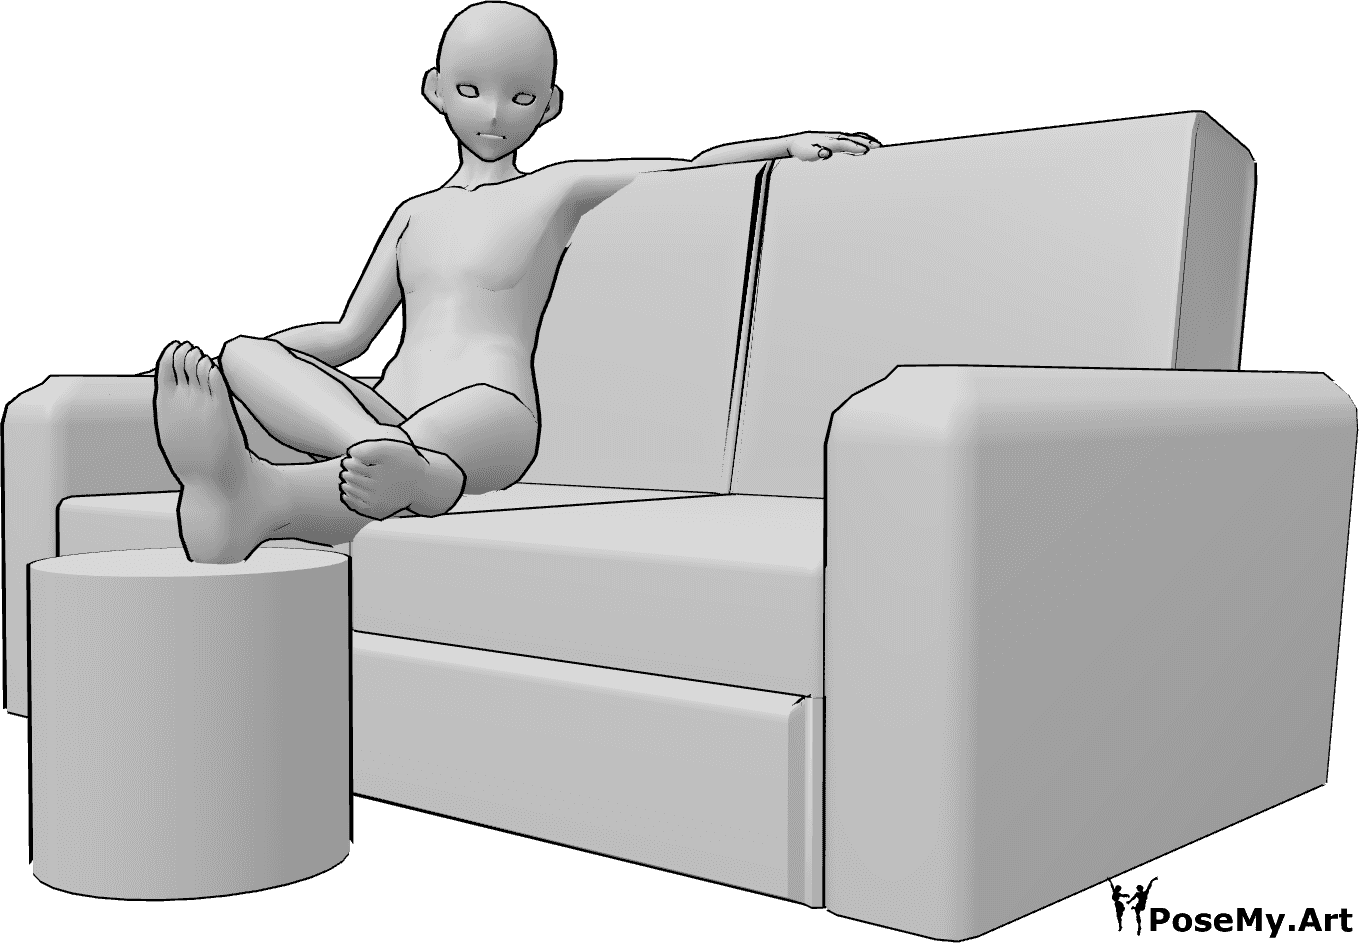 Referência de poses- Pose de pés masculinos de anime - Homem anime está sentado no sofá e descansa as pernas, pose de pés de homem anime